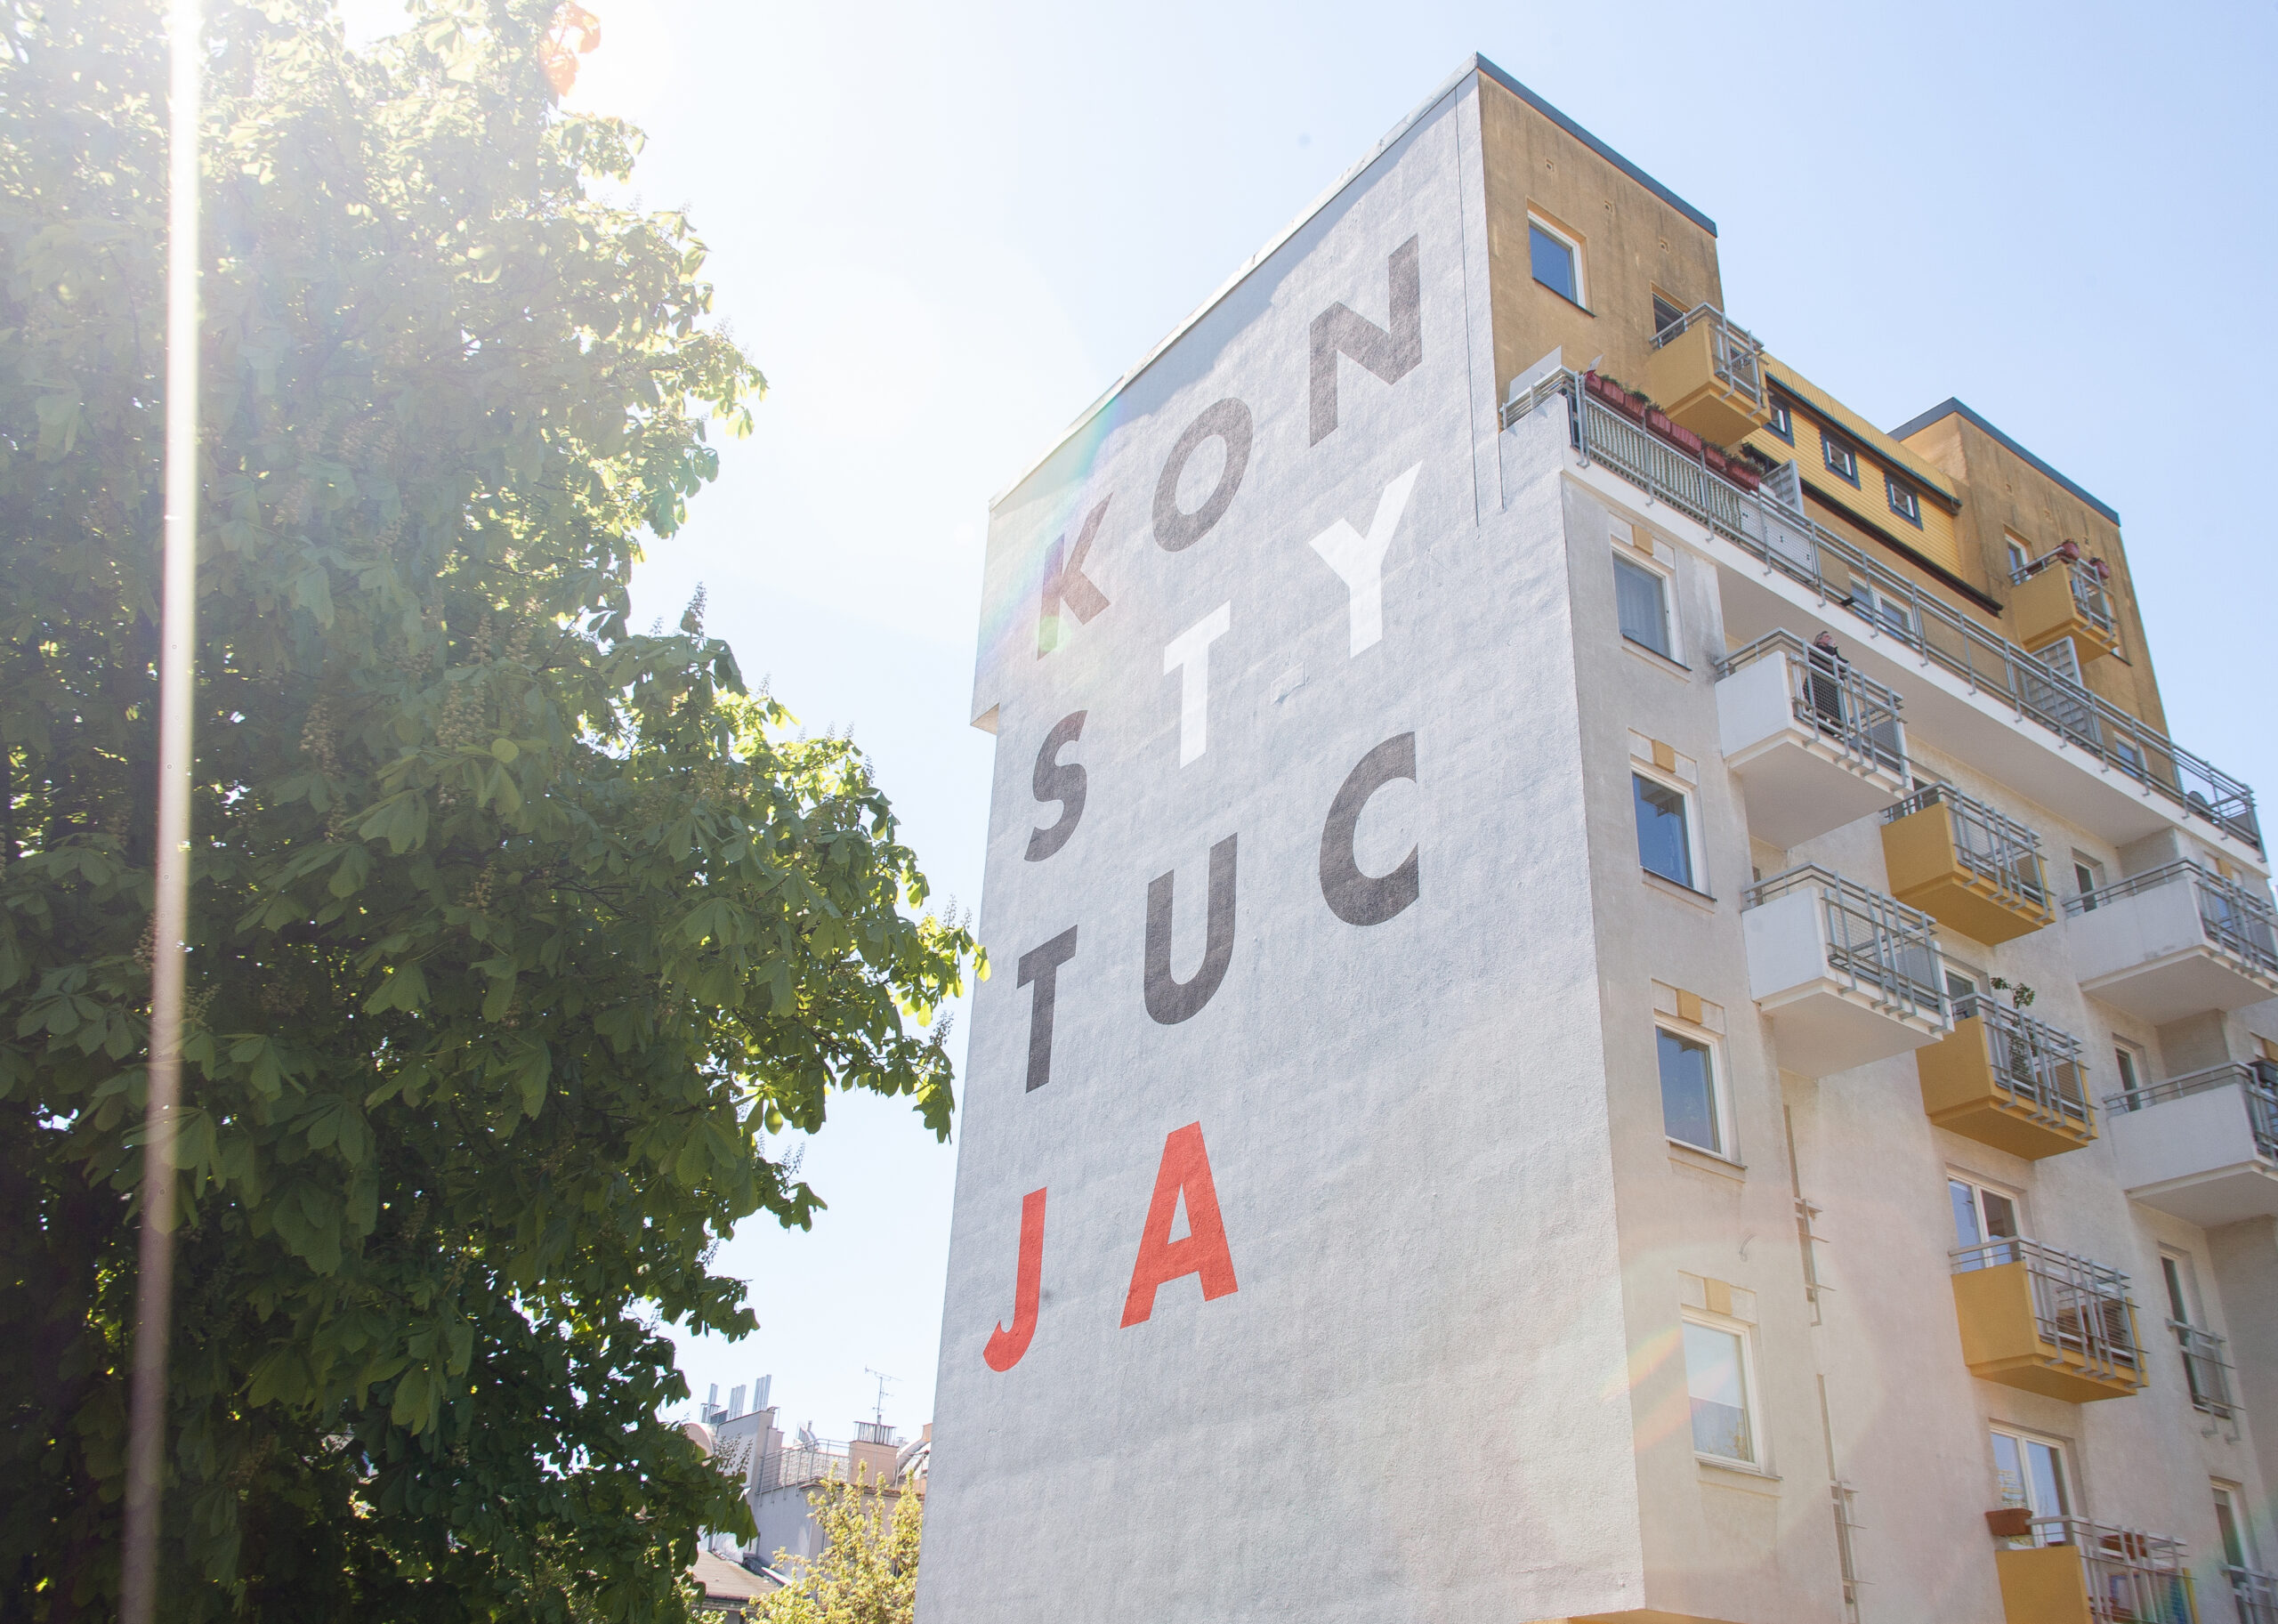 Wysoki budynek mieszkalny na Pradze zyskał nowe wielkoformatowe malowidło ścienne.